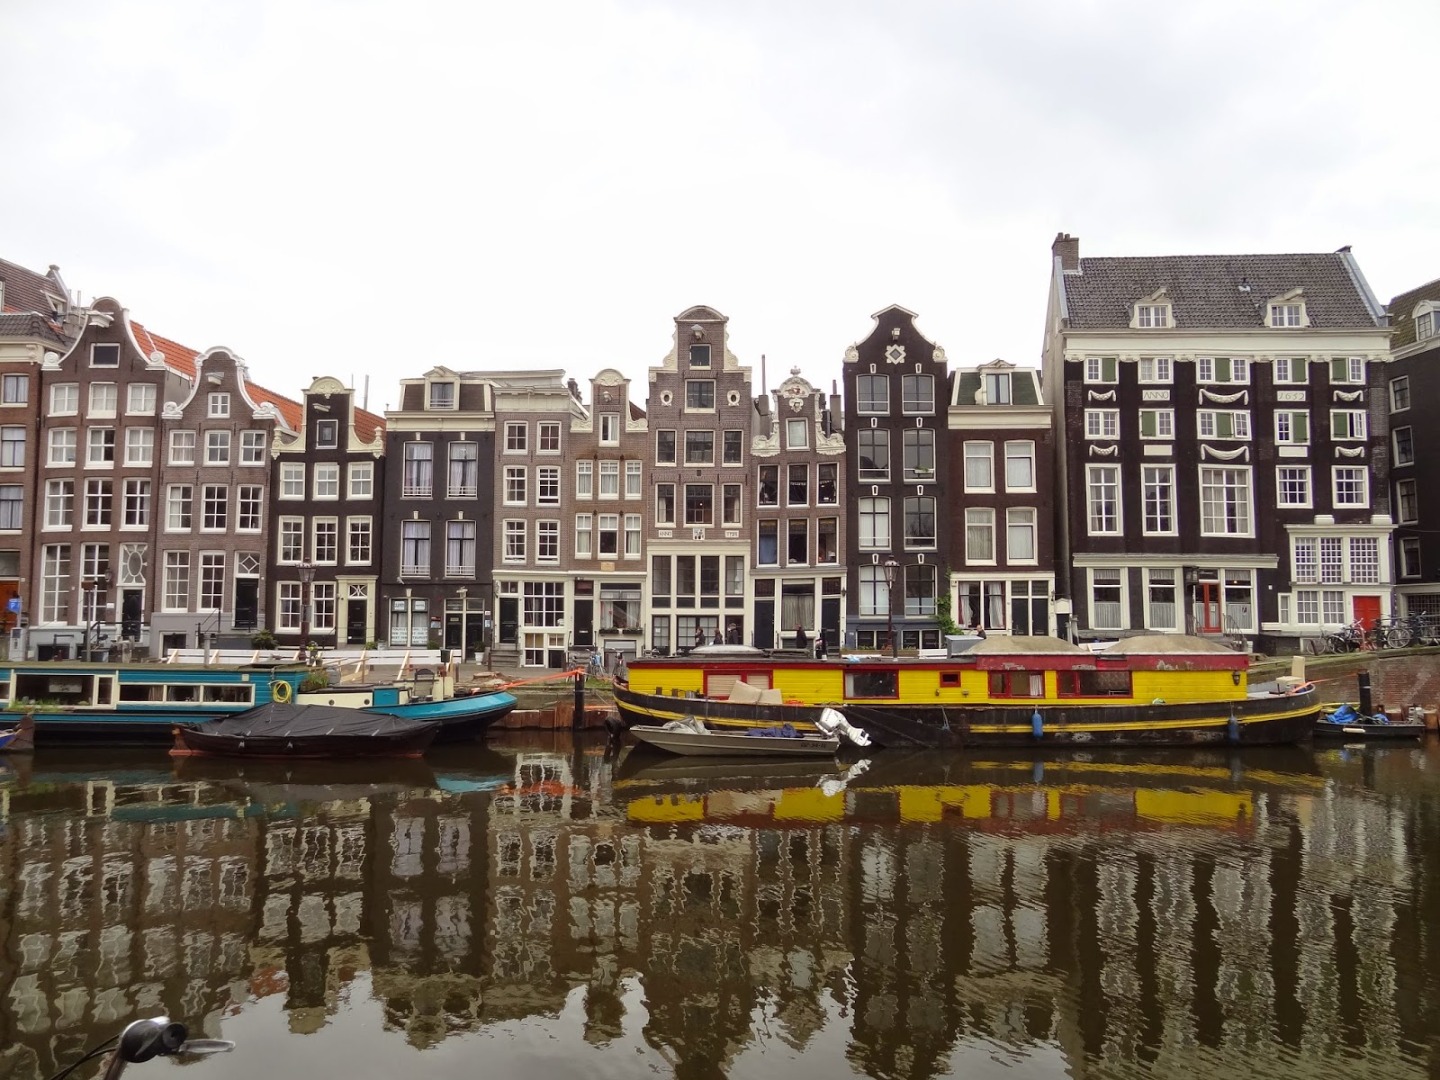 Amsterdam’da evlerin neden yamuk olduğu ve tepelerinde kanca olduğu belli oldu 10